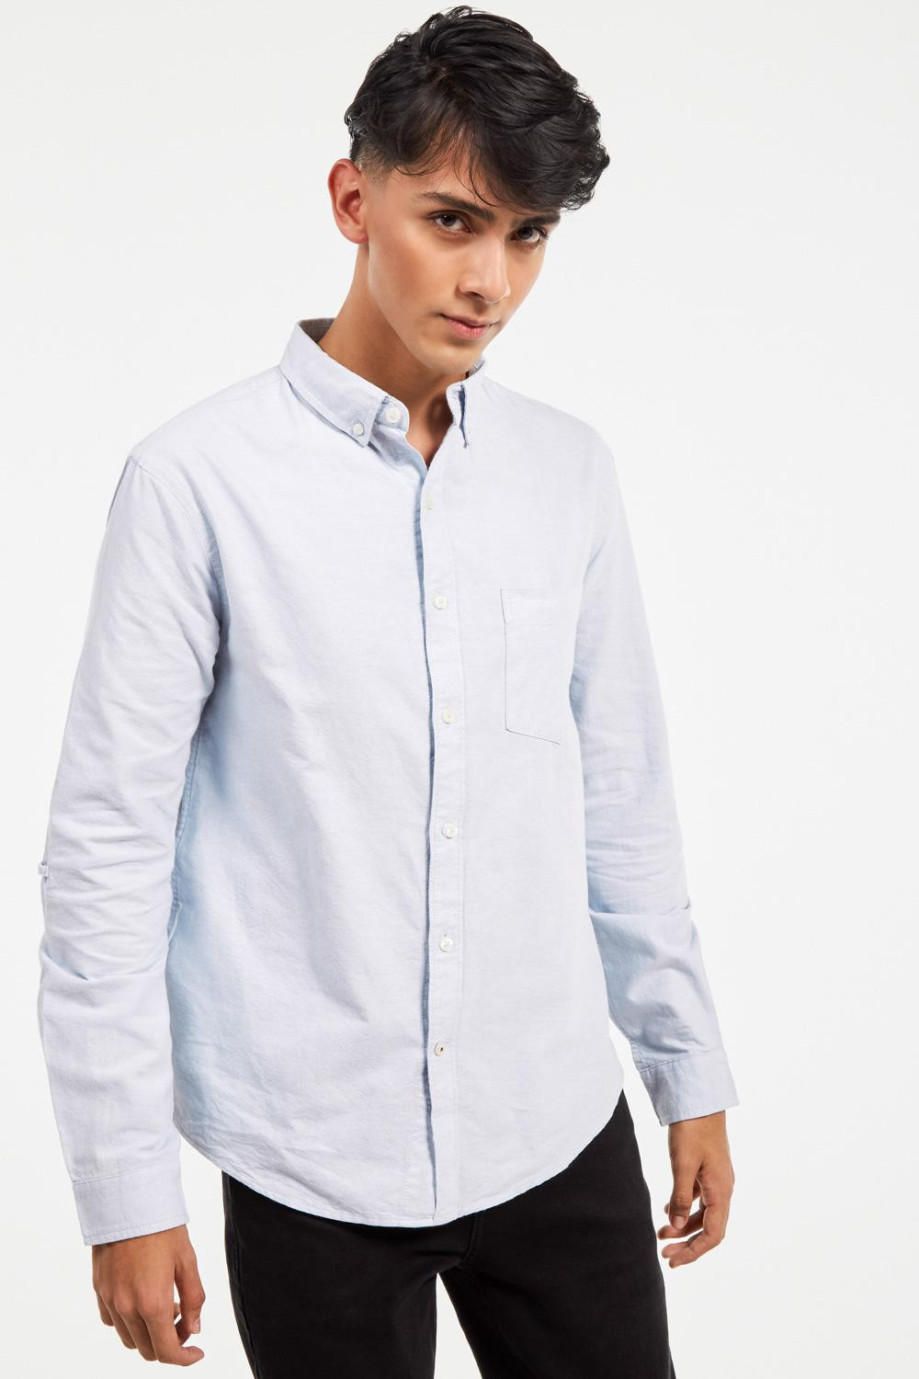 Camisa cuello button down, manga larga con bolsillo sobrepuesto en el frente de la camisa.